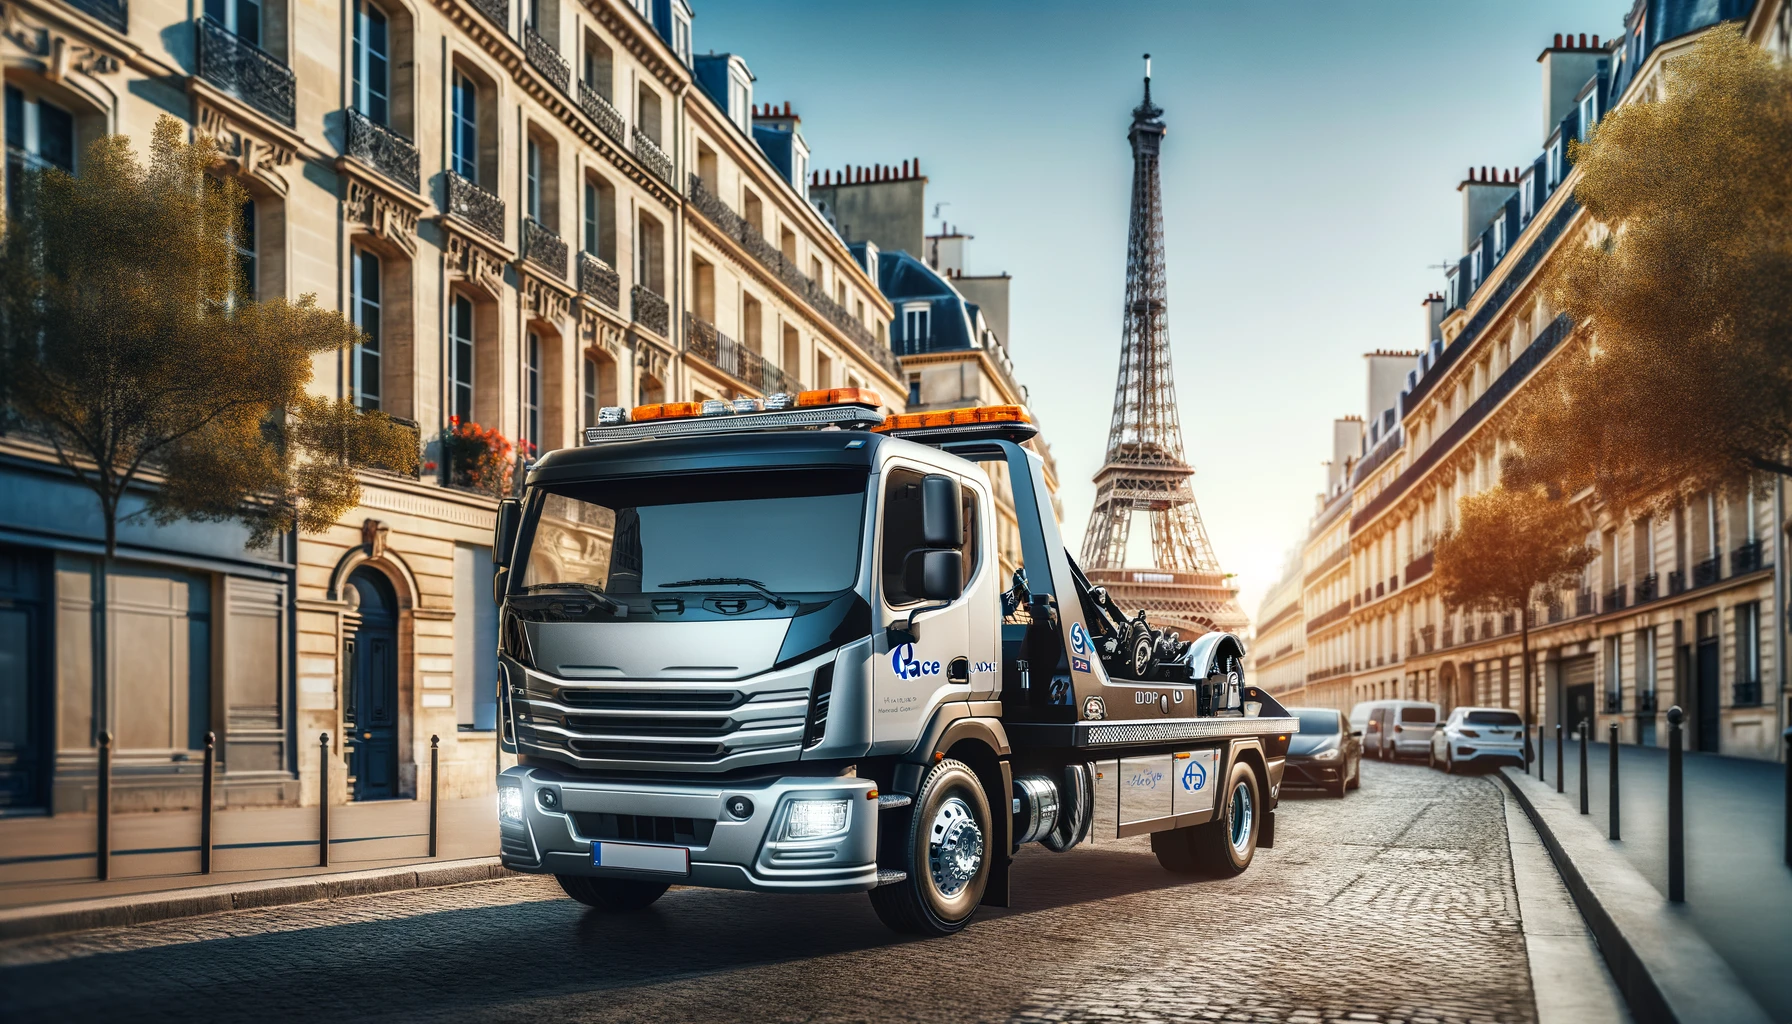 L'image montre une dépanneuse moderne dans les rues de Paris avec la tour Eiffel en arrière-plan. Le camion est équipé pour le remorquage et porte un logo d'entreprise. La scène se déroule en journée, entourée d'architecture parisienne typique, sous un ciel clair.